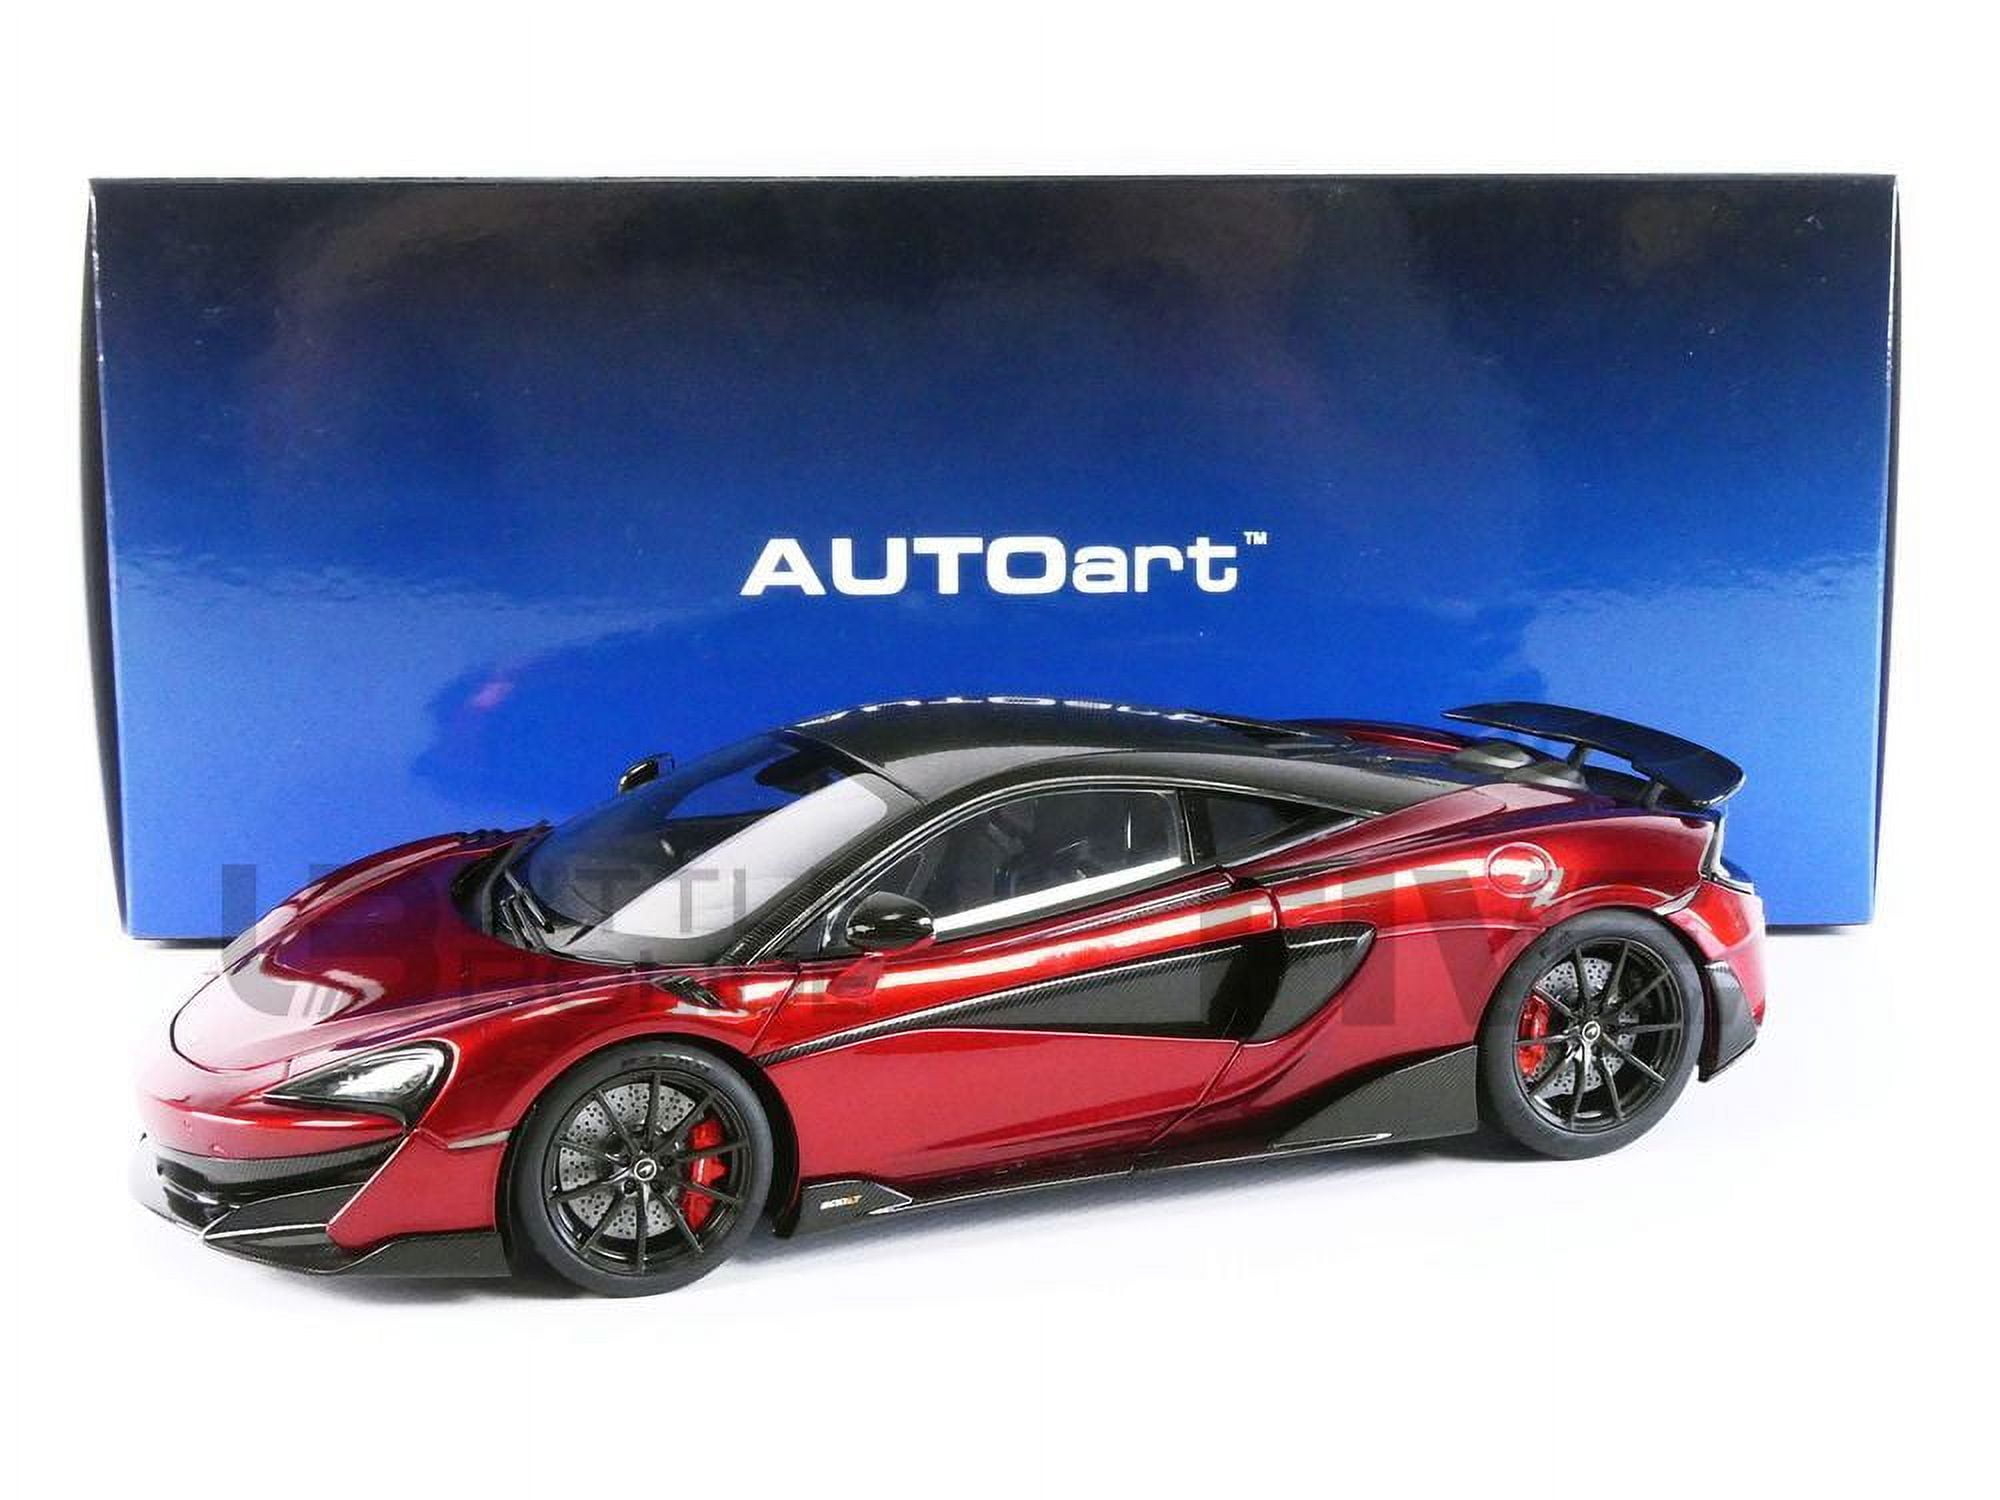 Picture of Autoart 76085 1-18 Scale Mclaren 600lt Vermillion Carbon Model Car, Red